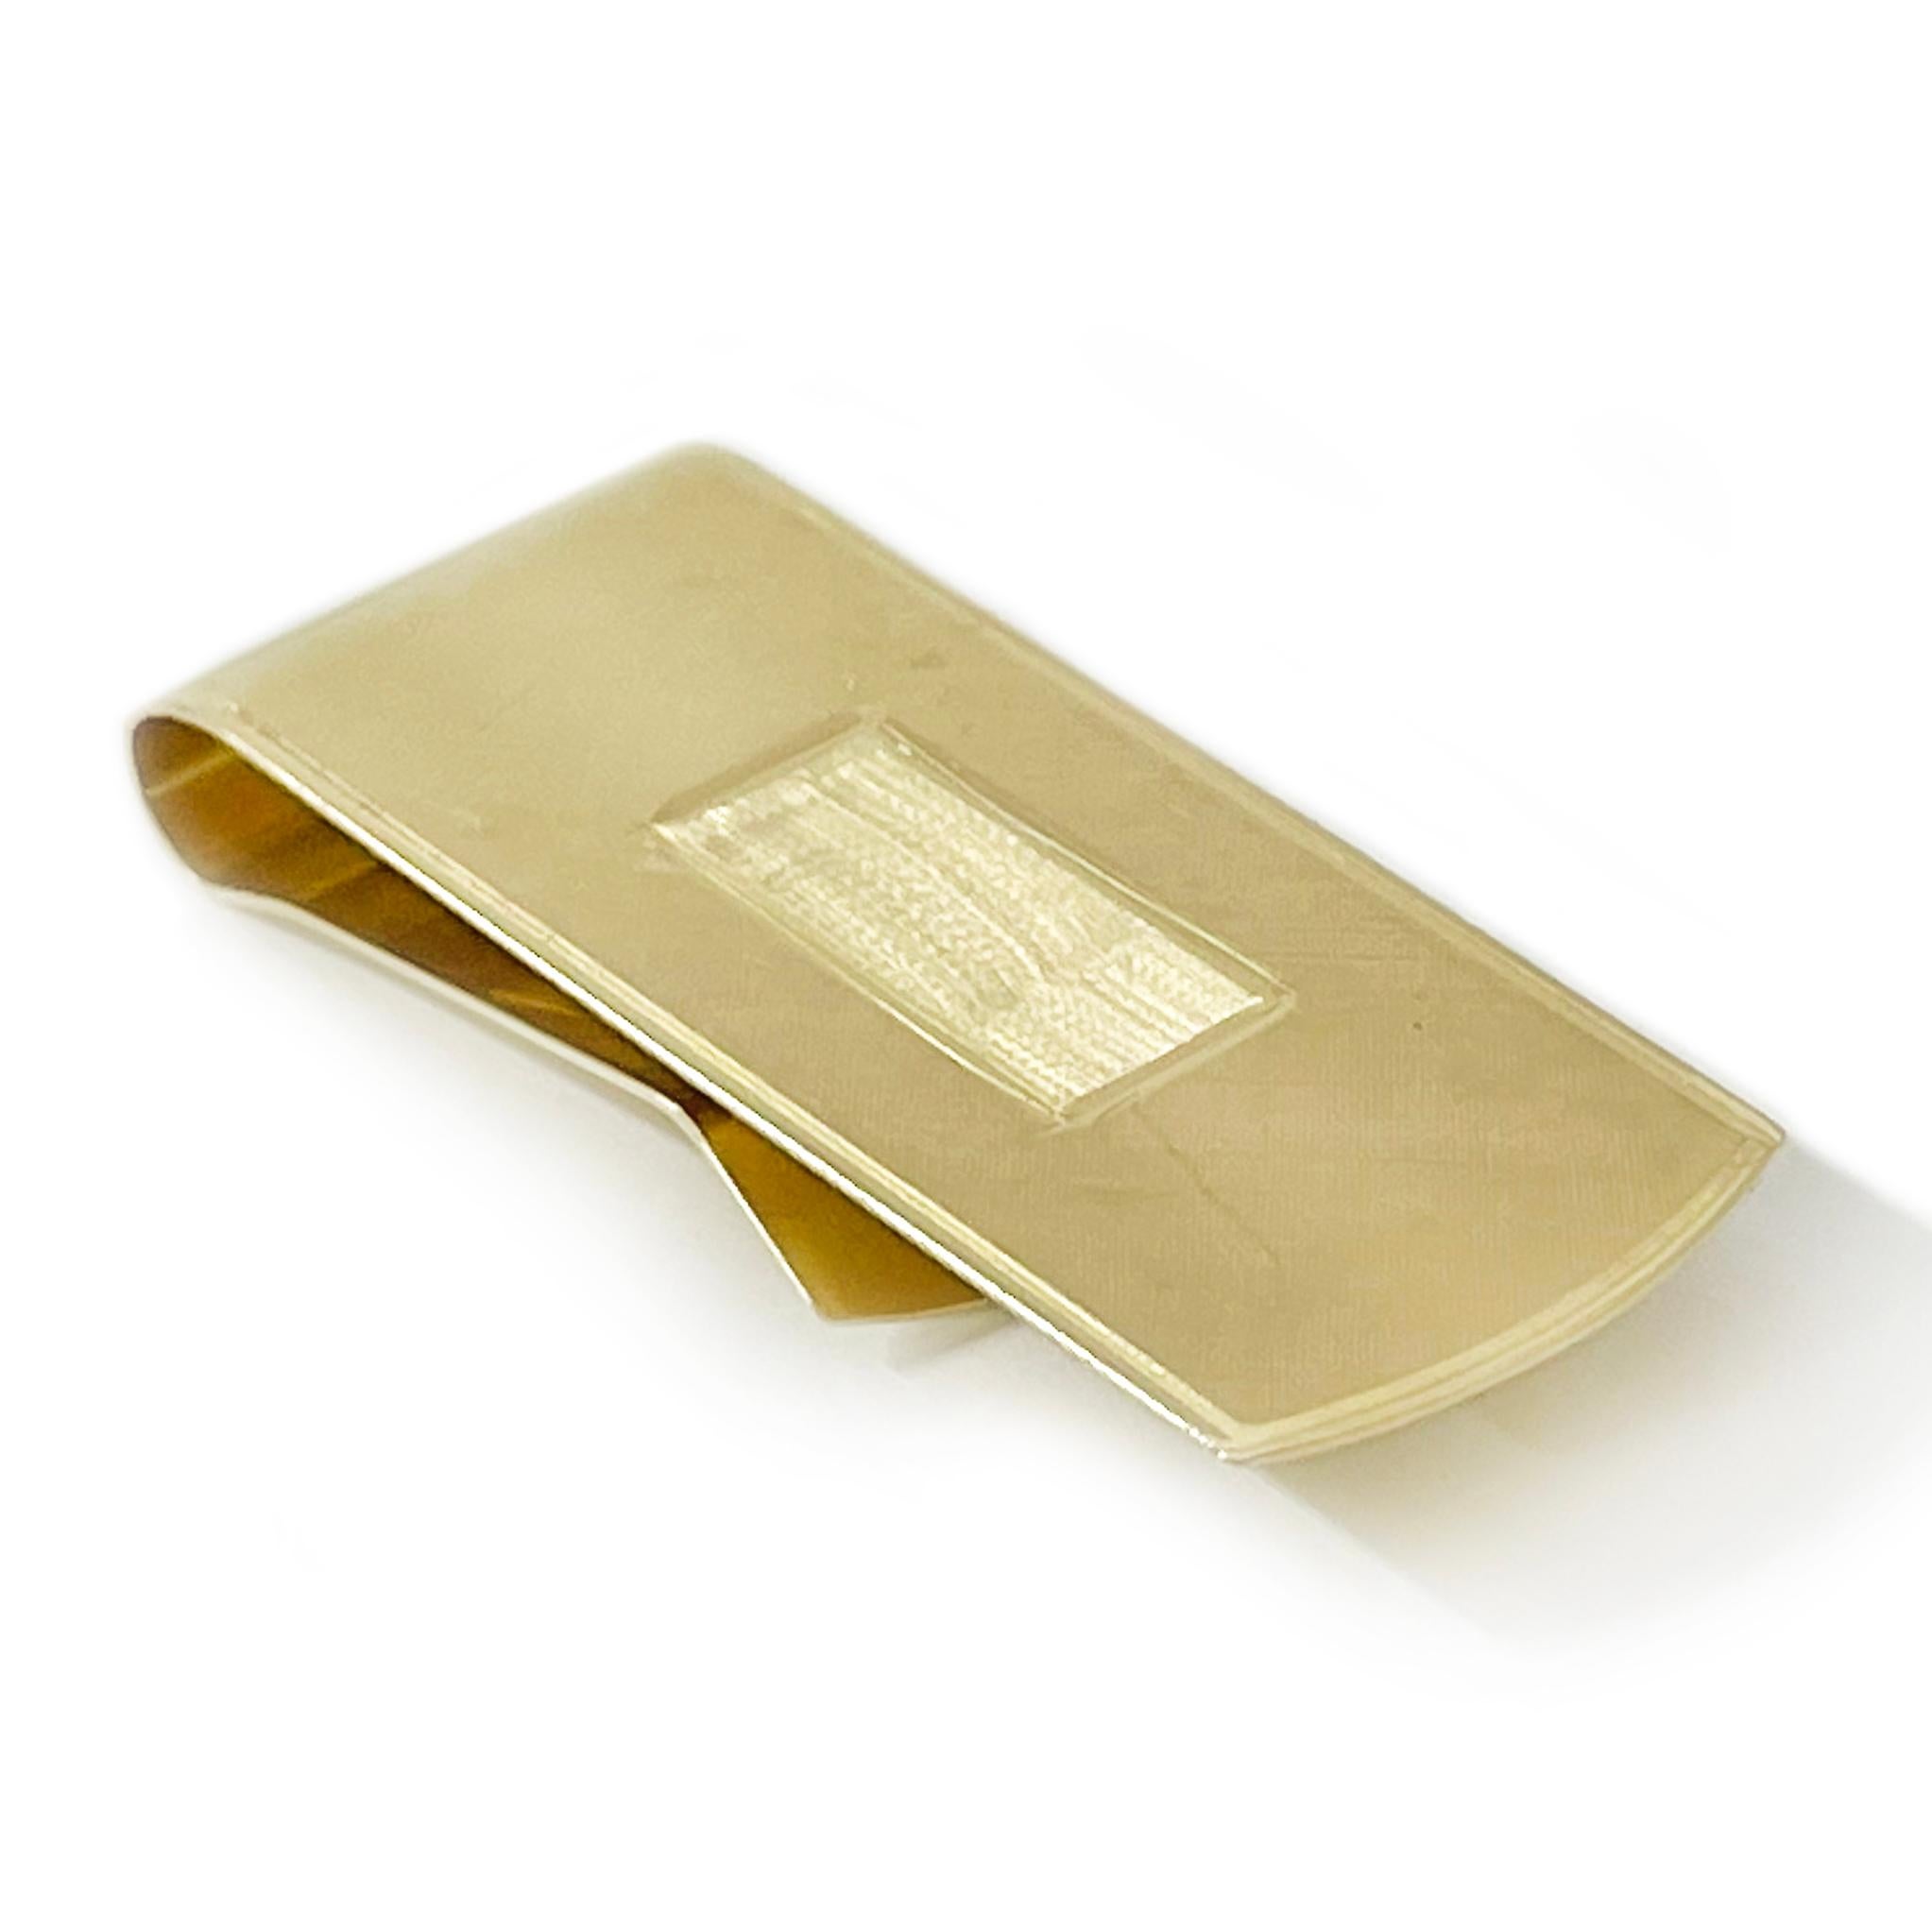 14 Karat Gelbgold Gravierbare Geldklammer. Die Geldscheinklammer hat eine florentinische Oberfläche auf der Oberseite und eine glatte, glänzende Oberfläche auf der Rückseite. Die Geldklammer misst 2,1